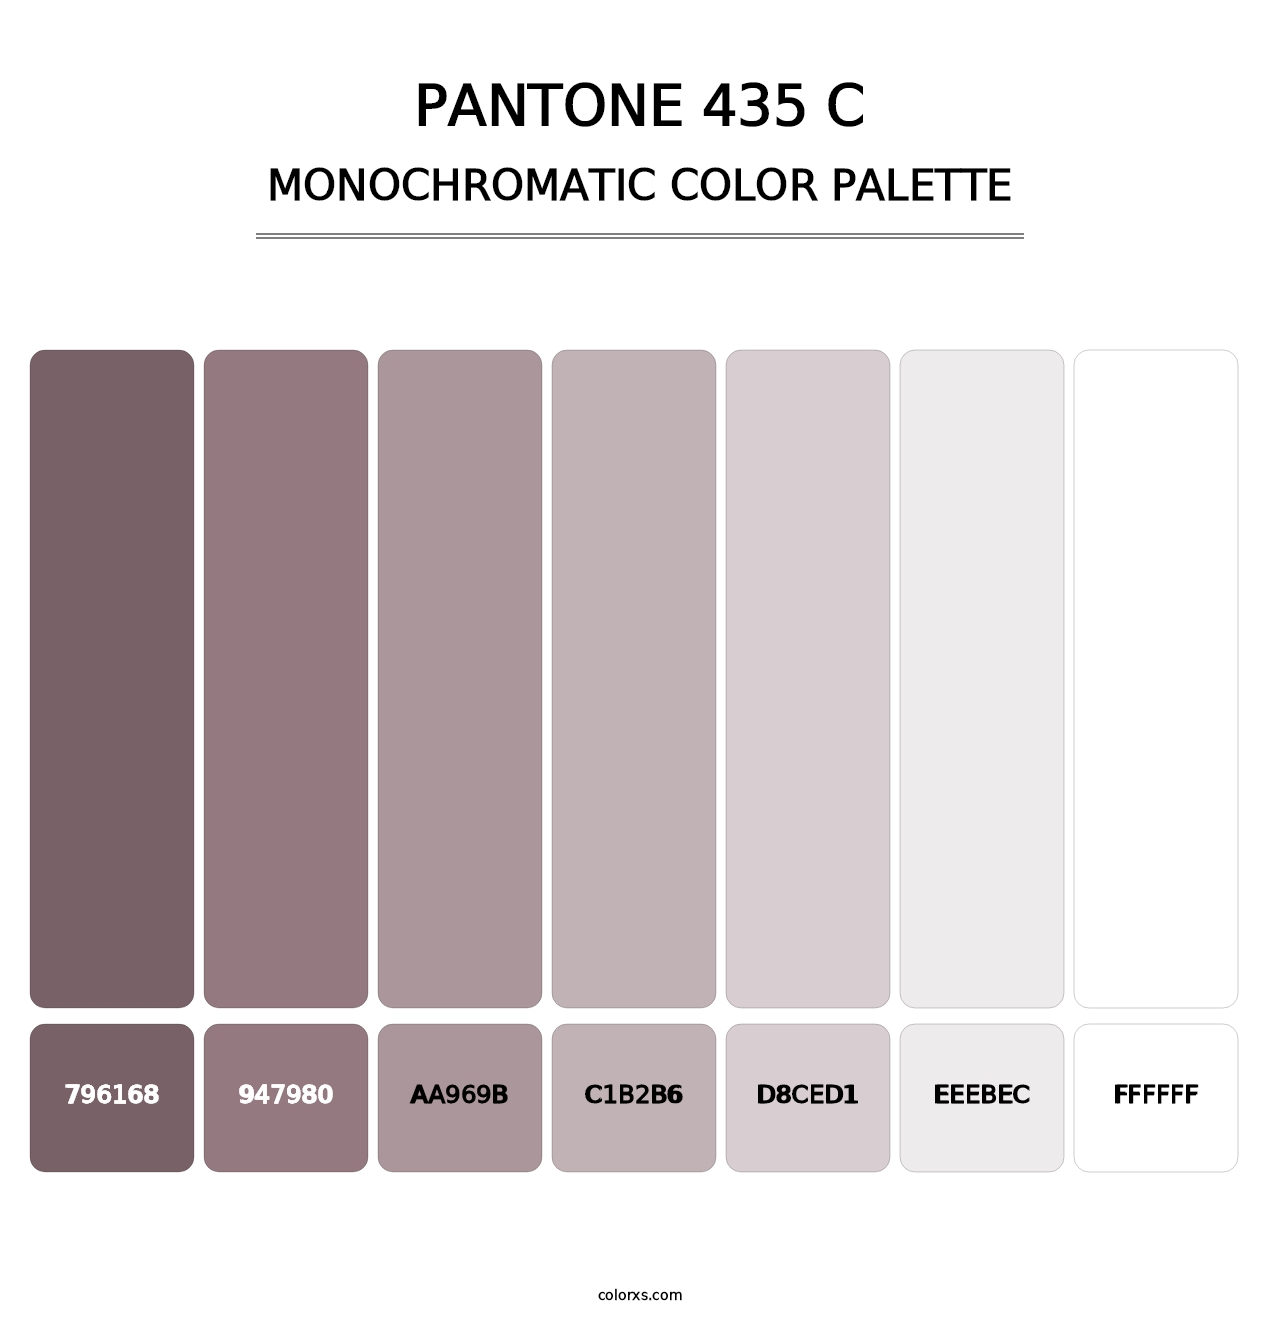 PANTONE 435 C - Monochromatic Color Palette